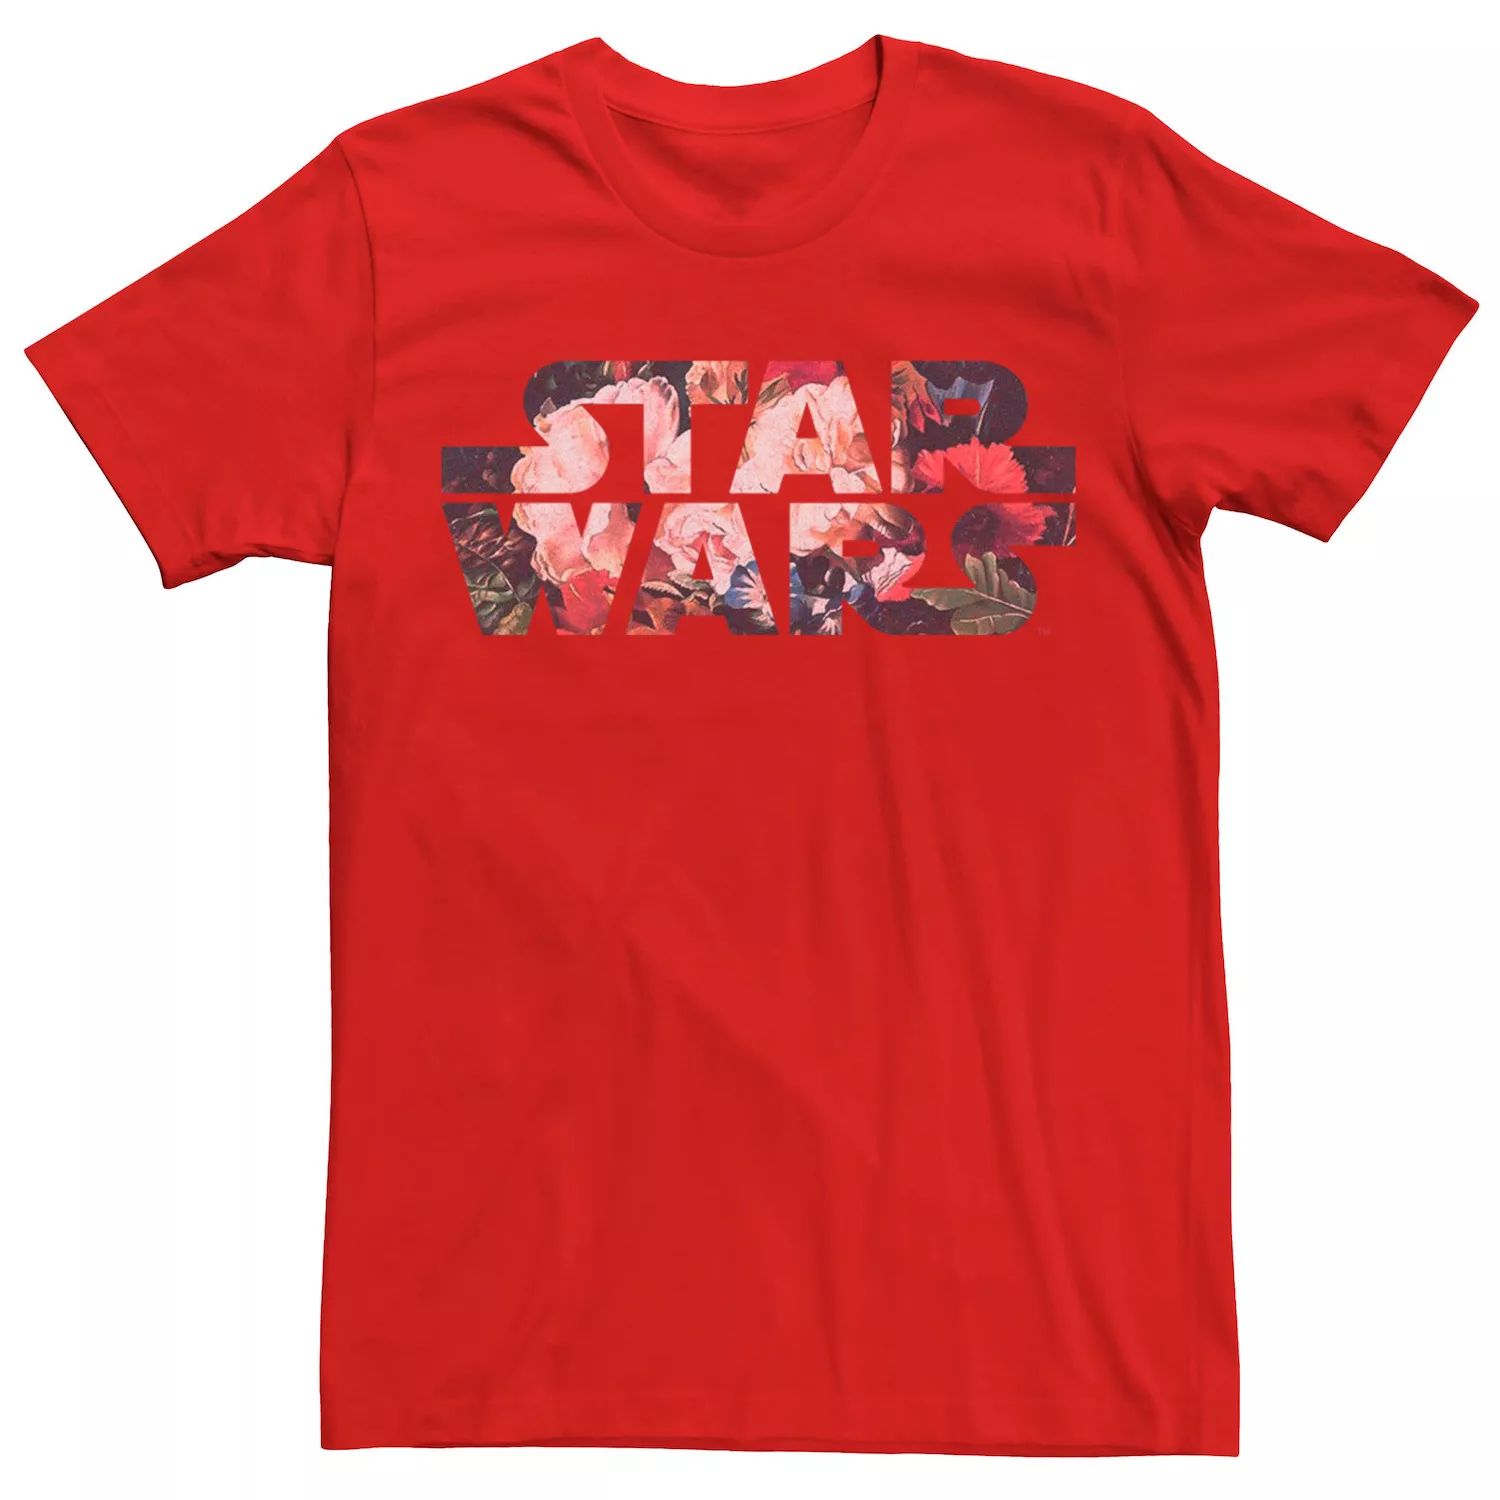 Мужская футболка с логотипом и антикварным цветочным принтом «Звездные войны» Star Wars, красный